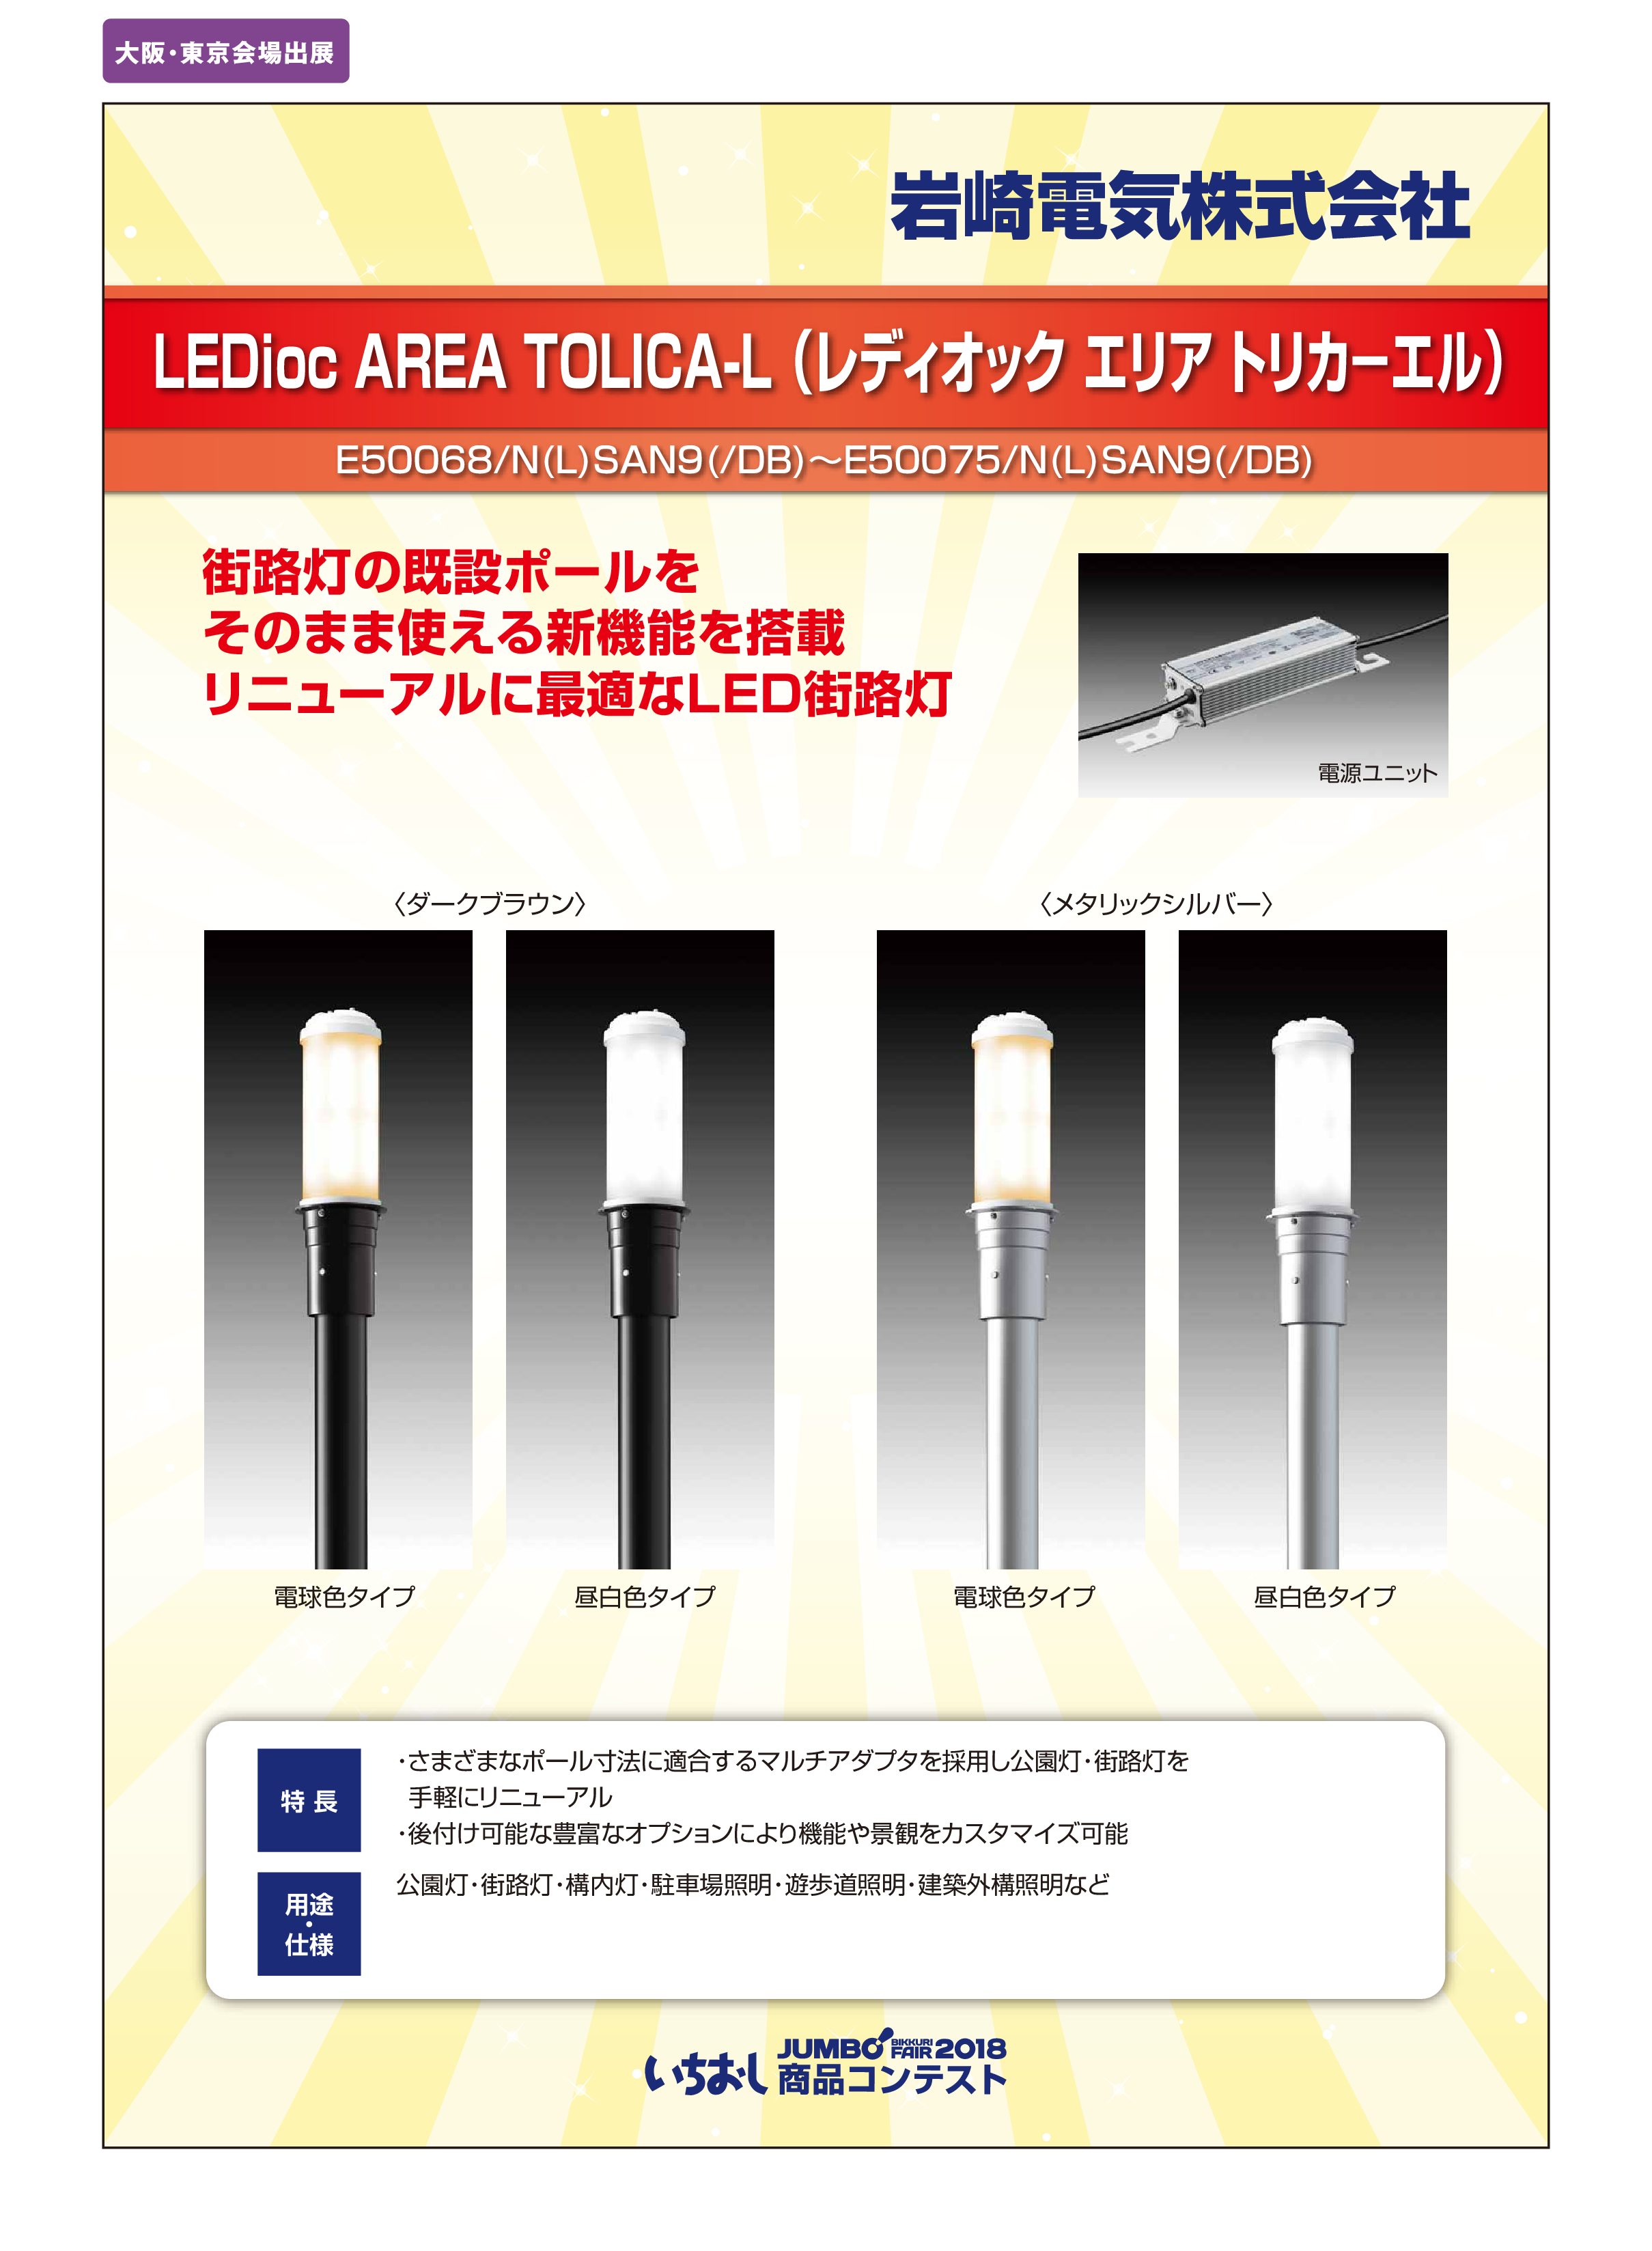 「LEDioc AREA TOLICA-L （レディオック エリア トリカ－エル）」岩崎電気株式会社の画像